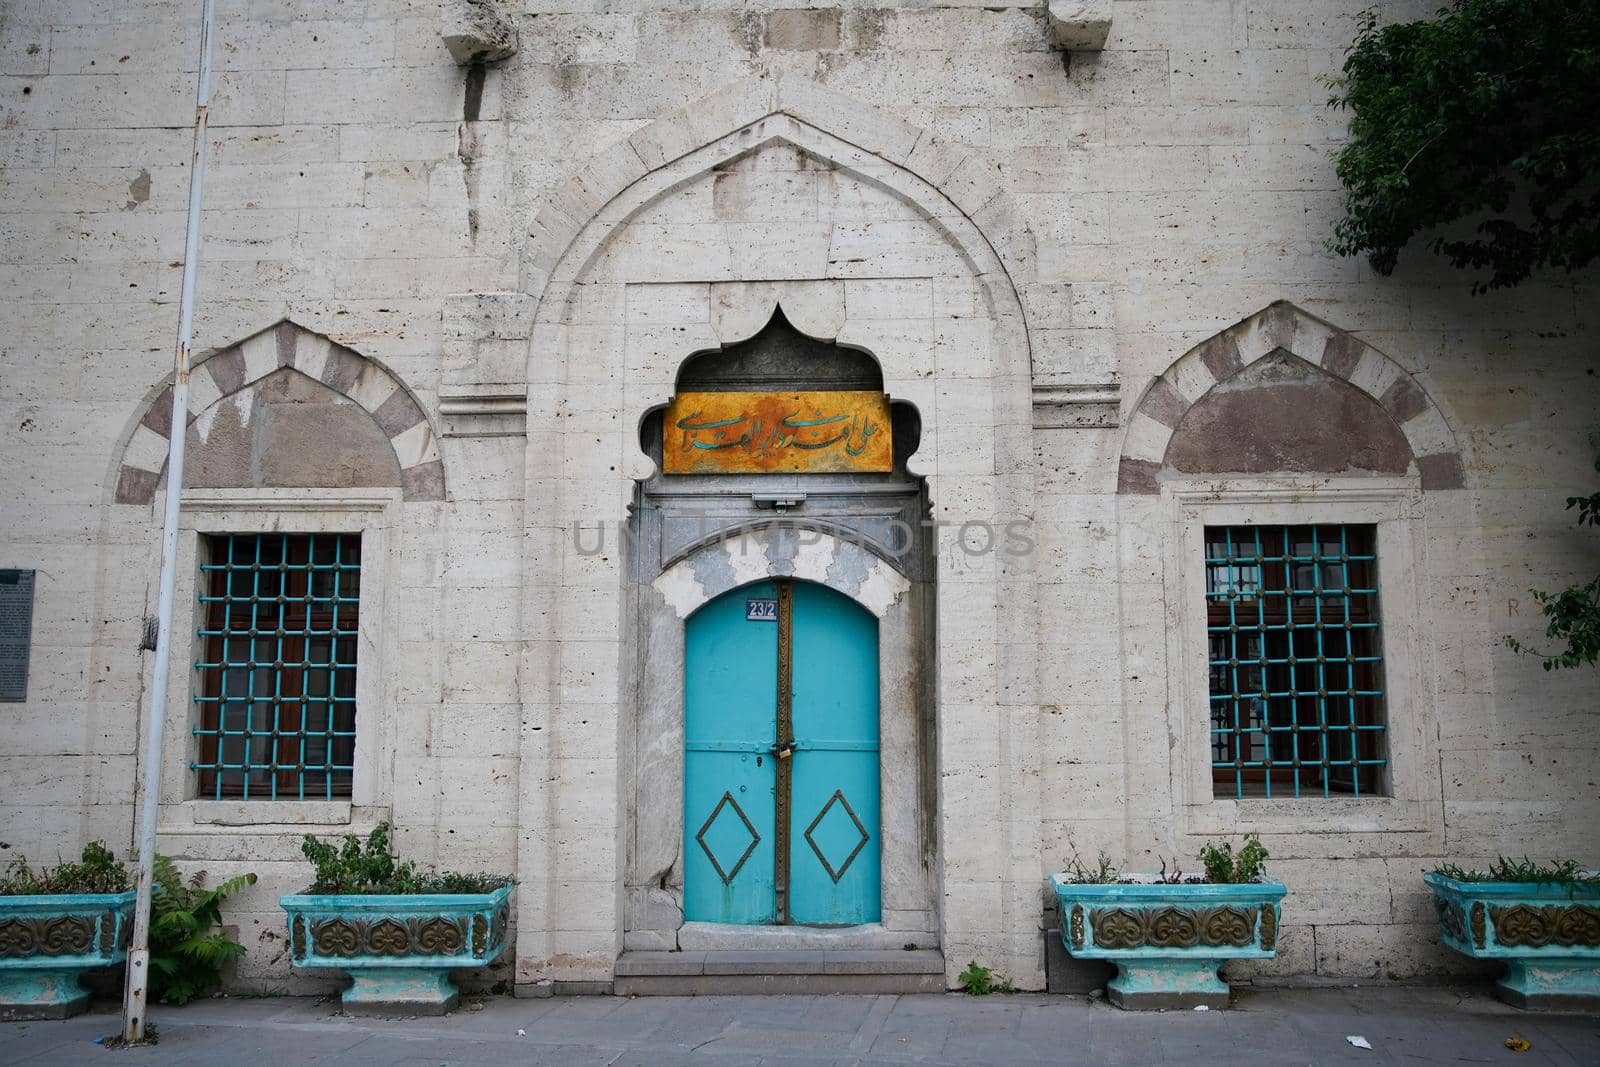 Door of an Old Building in Konya City, Turkiye